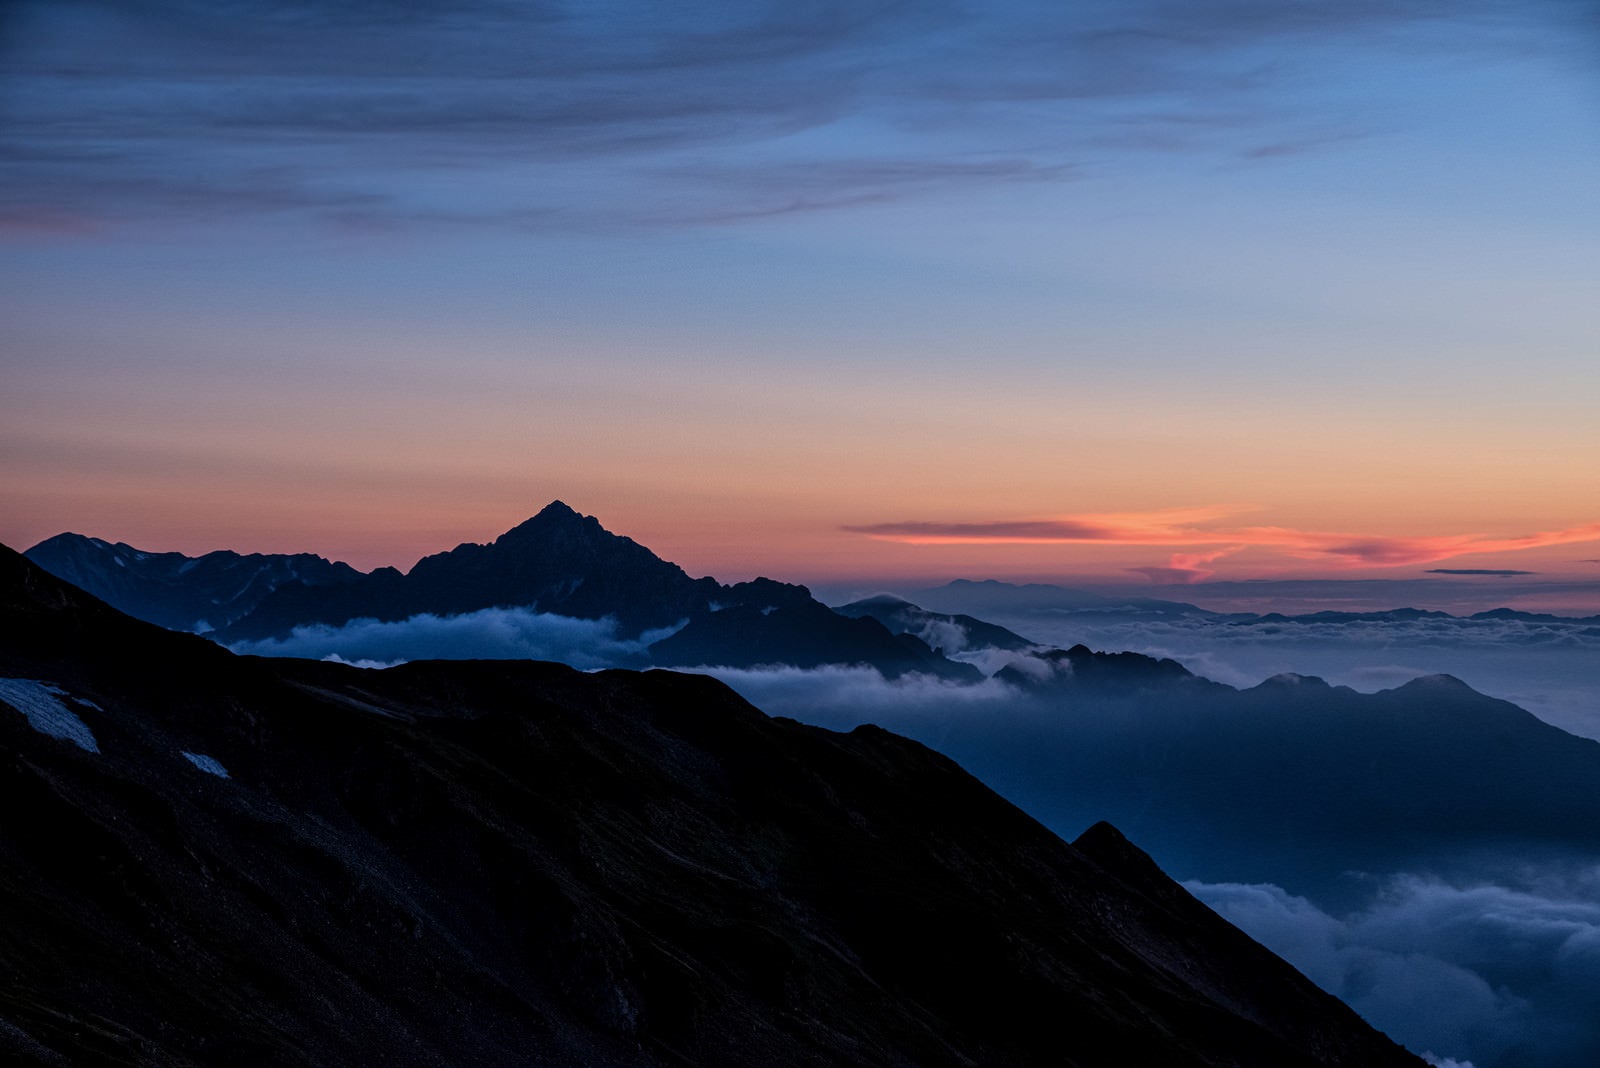 「夕焼けと剱岳」の写真